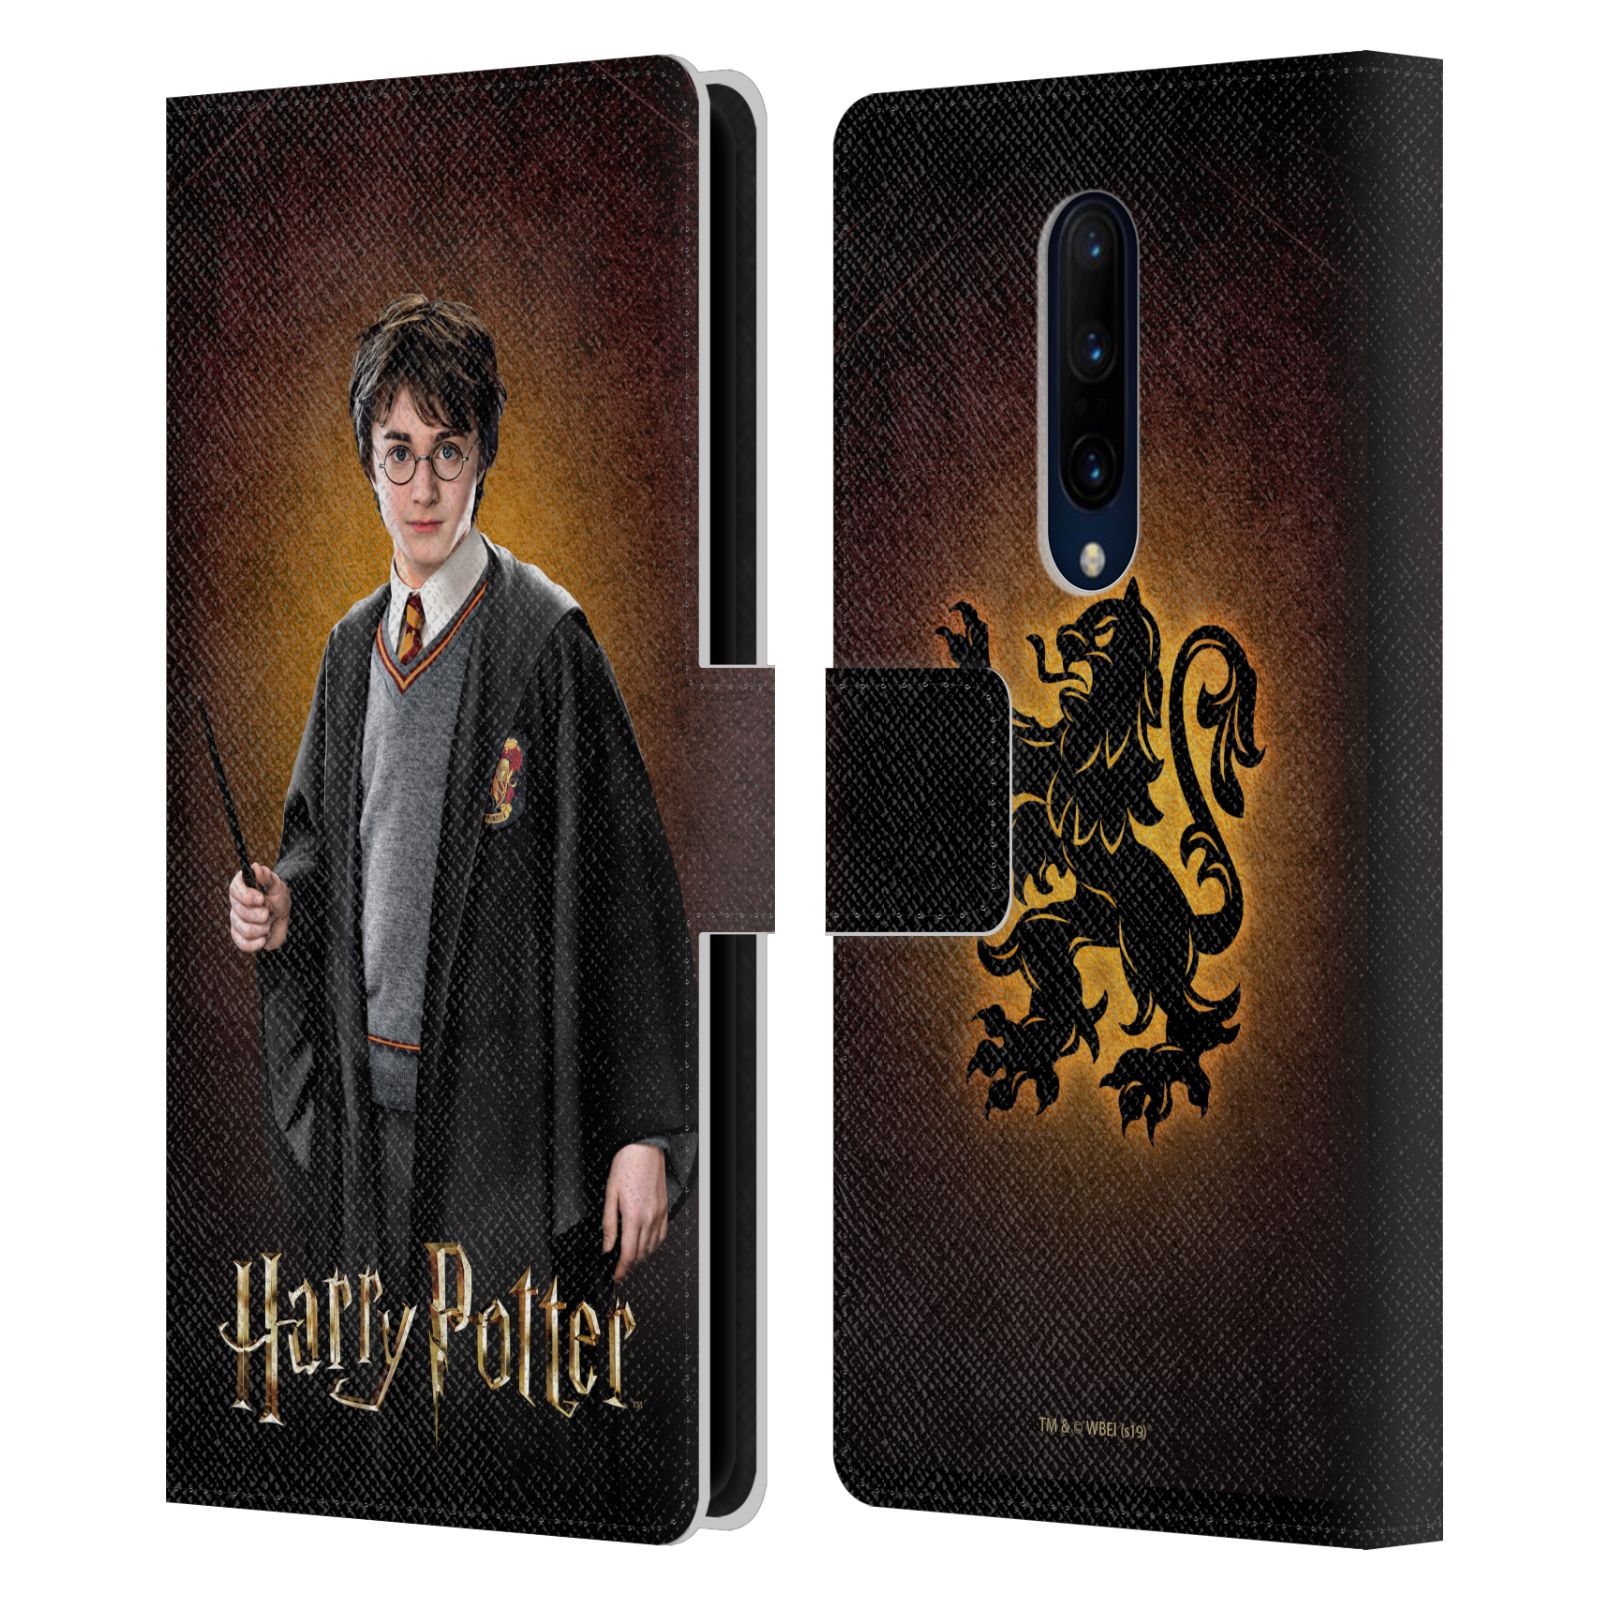 Pouzdro na mobil OnePlus 7 PRO  - HEAD CASE - Harry Potter - Harry Potter portrét